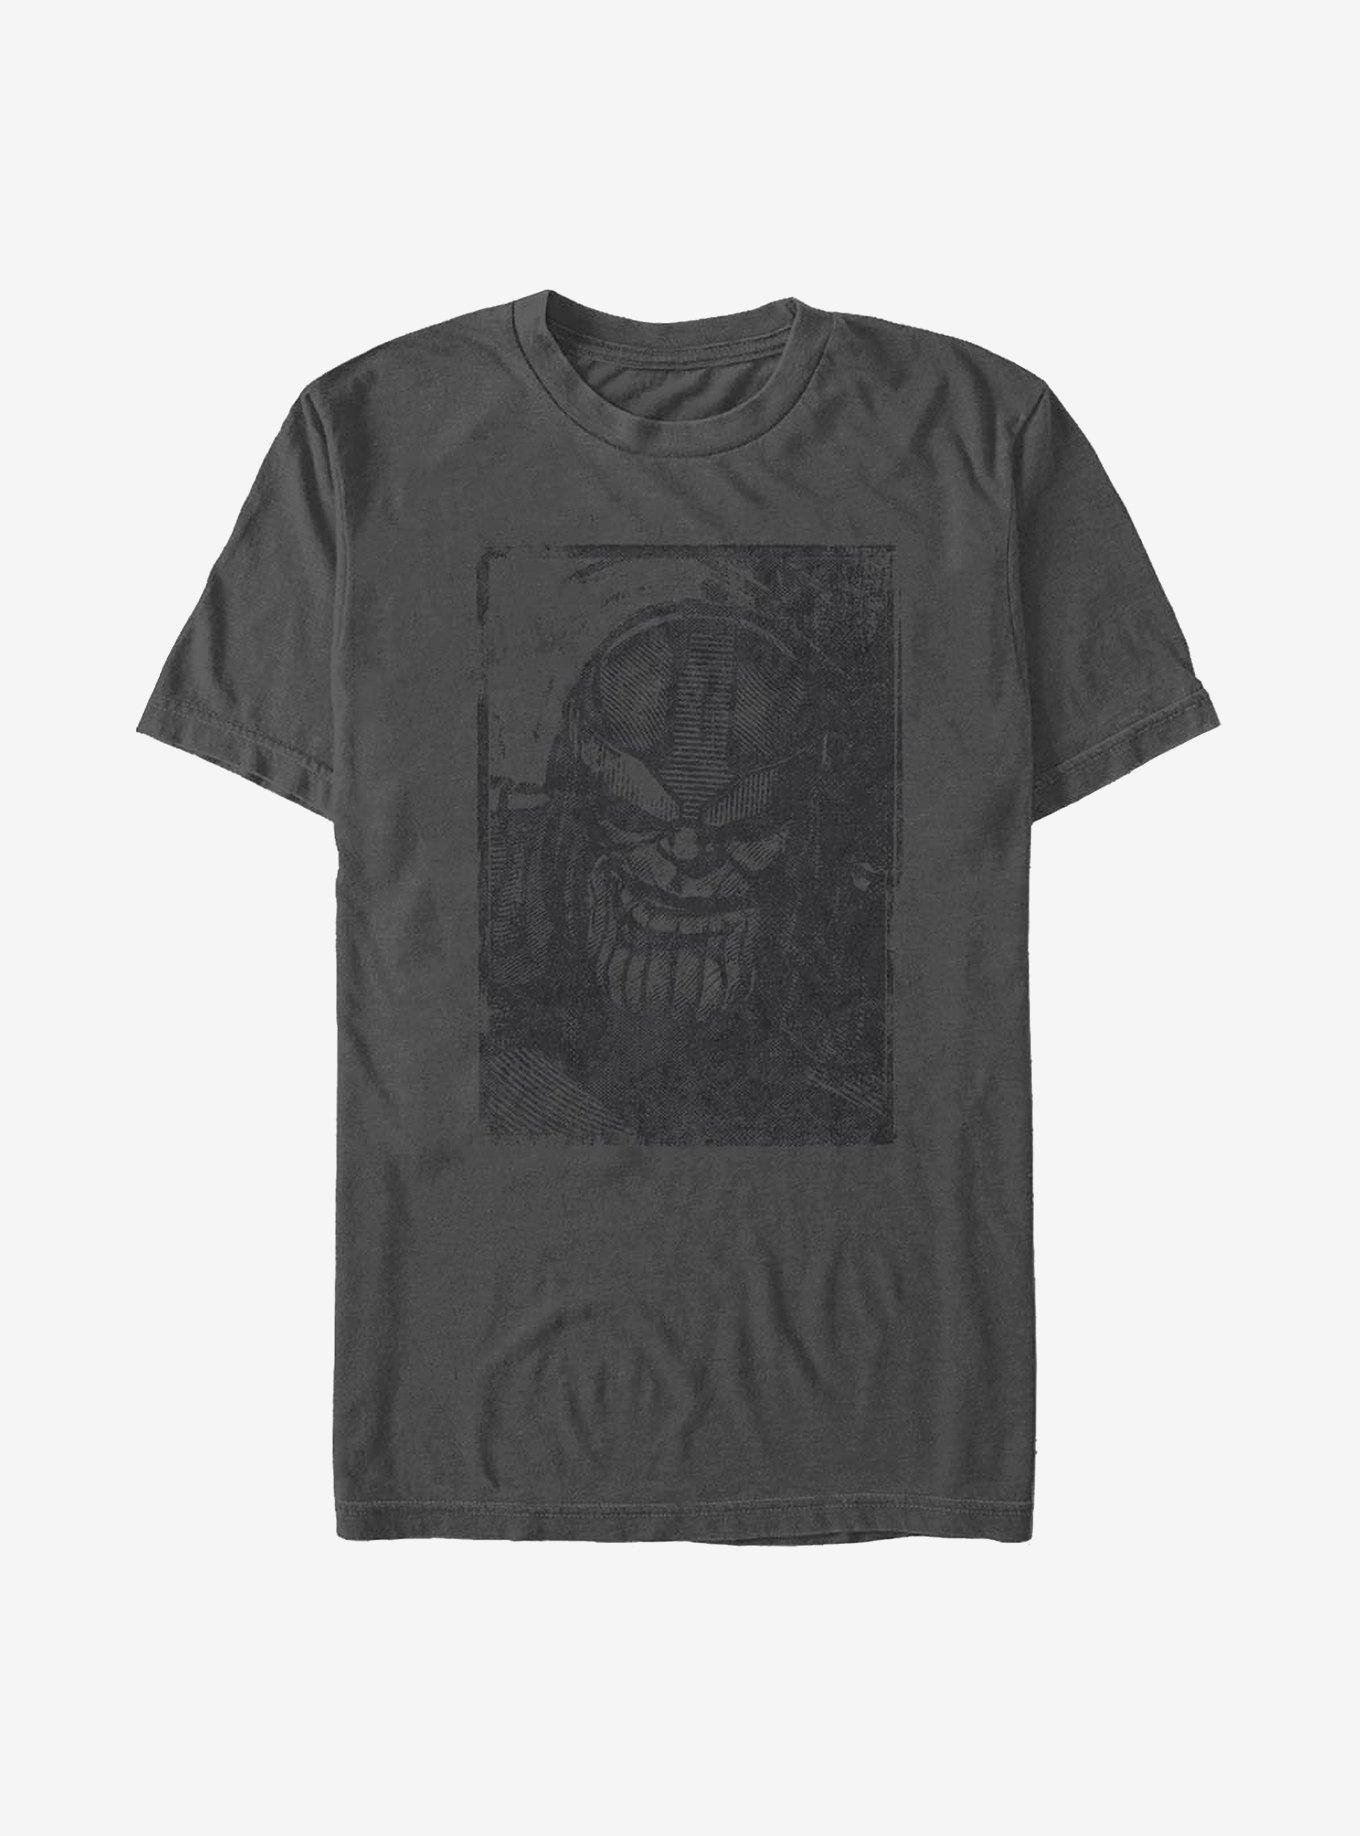 Marvel Avengers Titan Sketch T-Shirt, CHARCOAL, hi-res